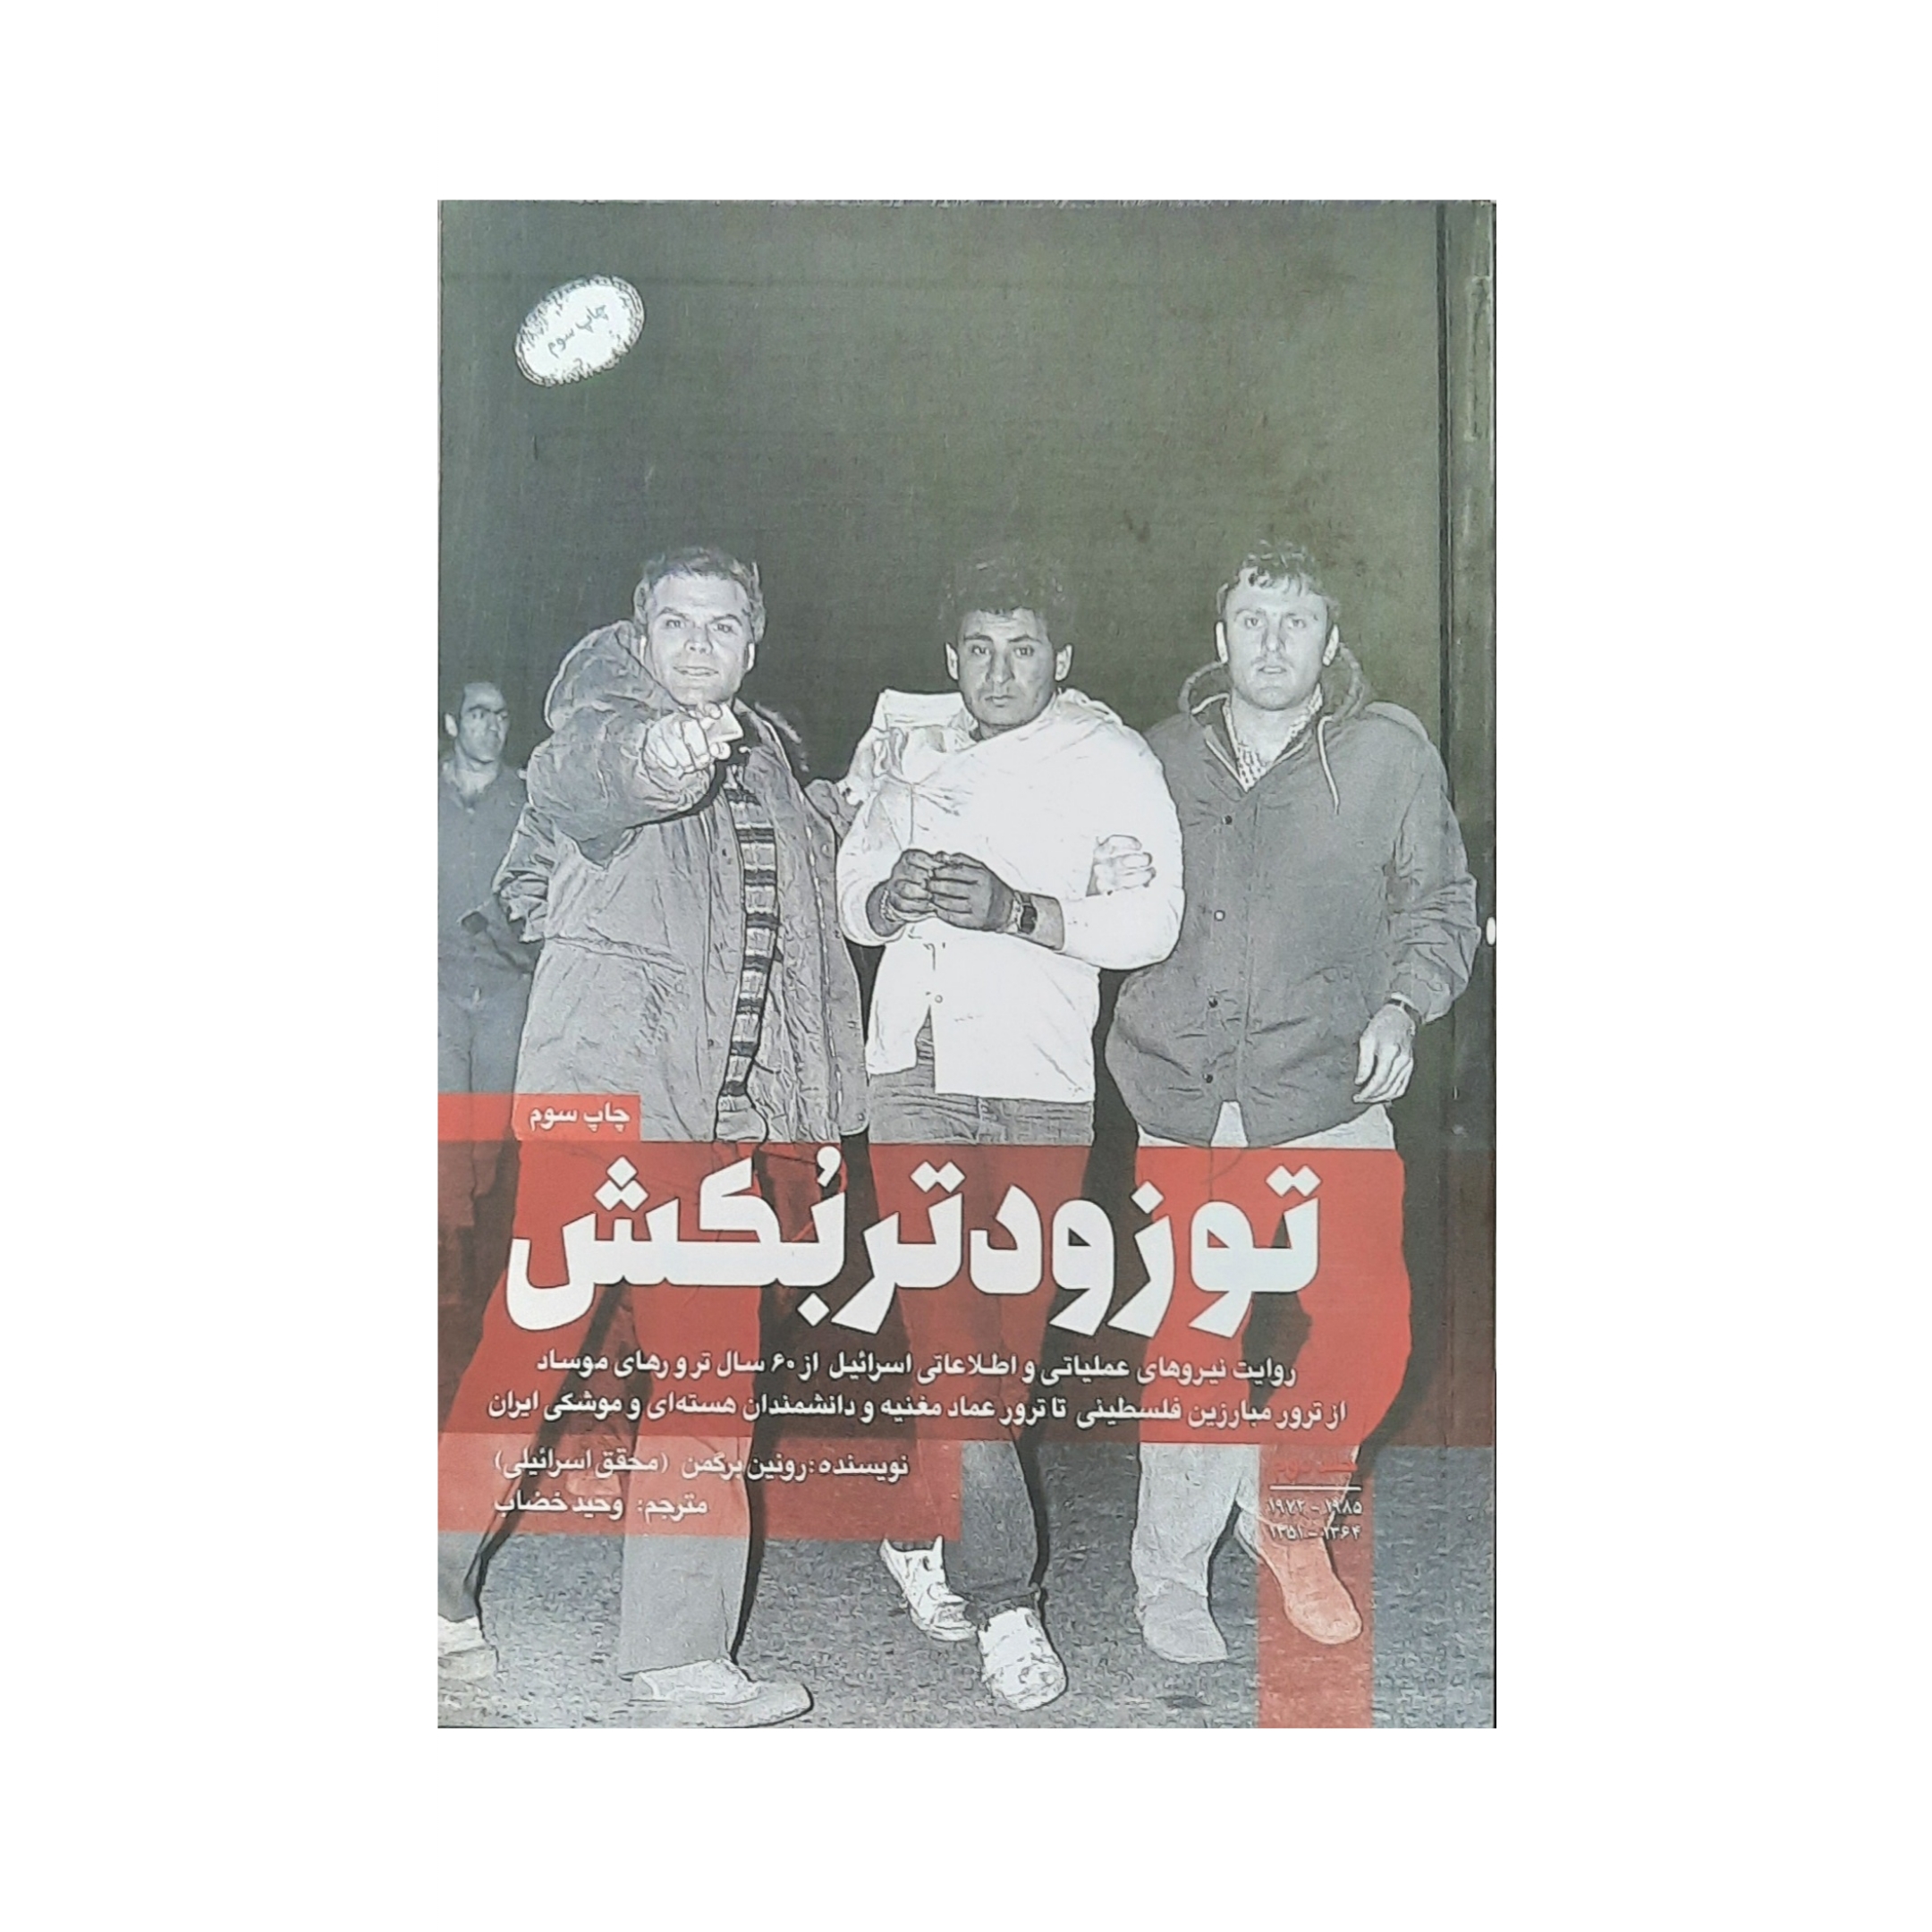 کتاب تو زودتر بکش اثر رونین برگمن انتشارات شهید کاظمی جلد 2